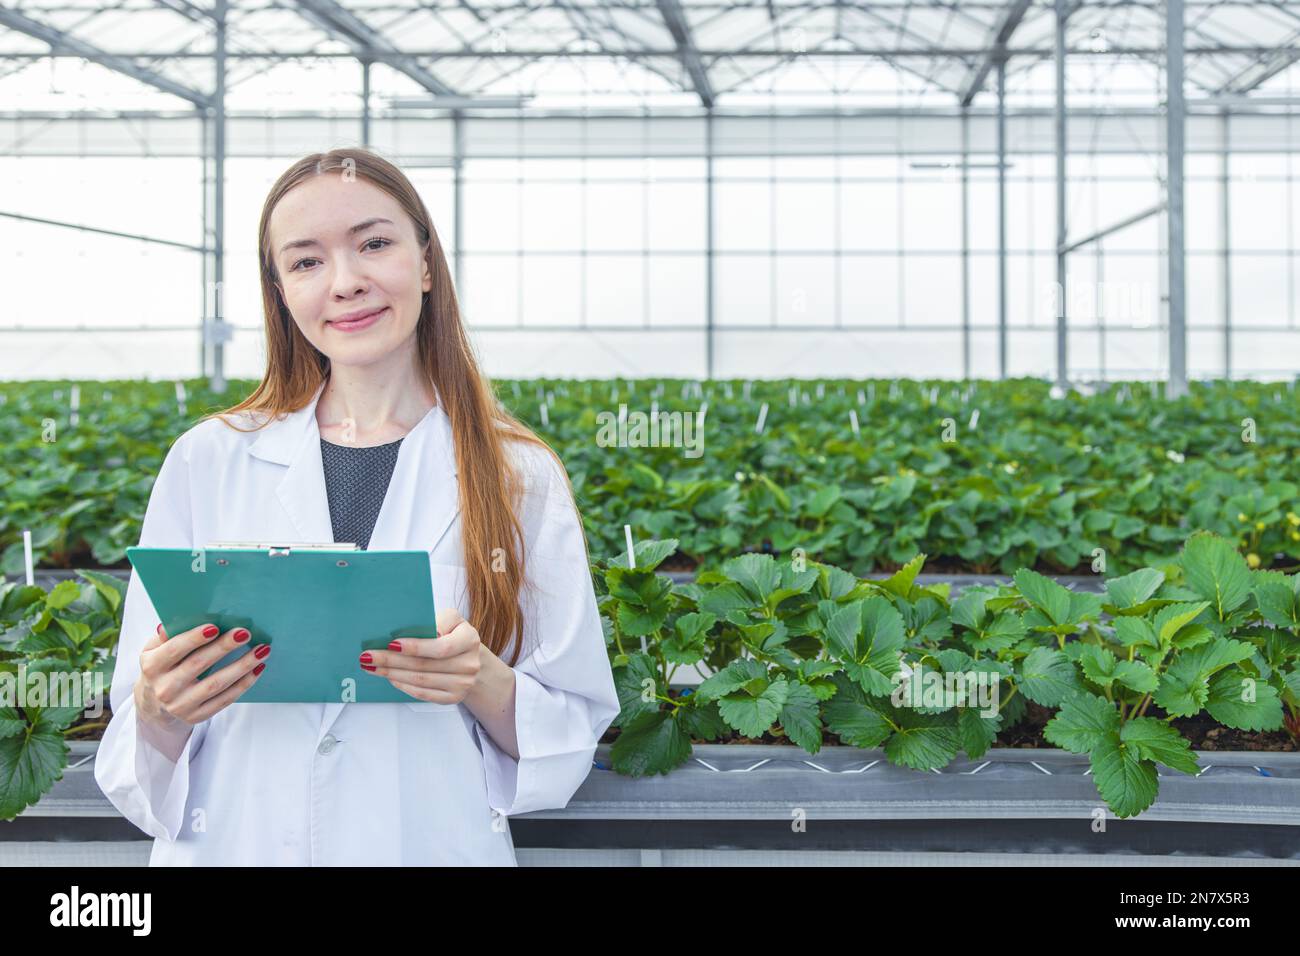 Porträtwissenschaftlerin im Grossgrünhaus-Bio-Erdbeer-Landwirtschaftsbetrieb für die arbeitende Frau in der Pflanzenforschung. Stockfoto